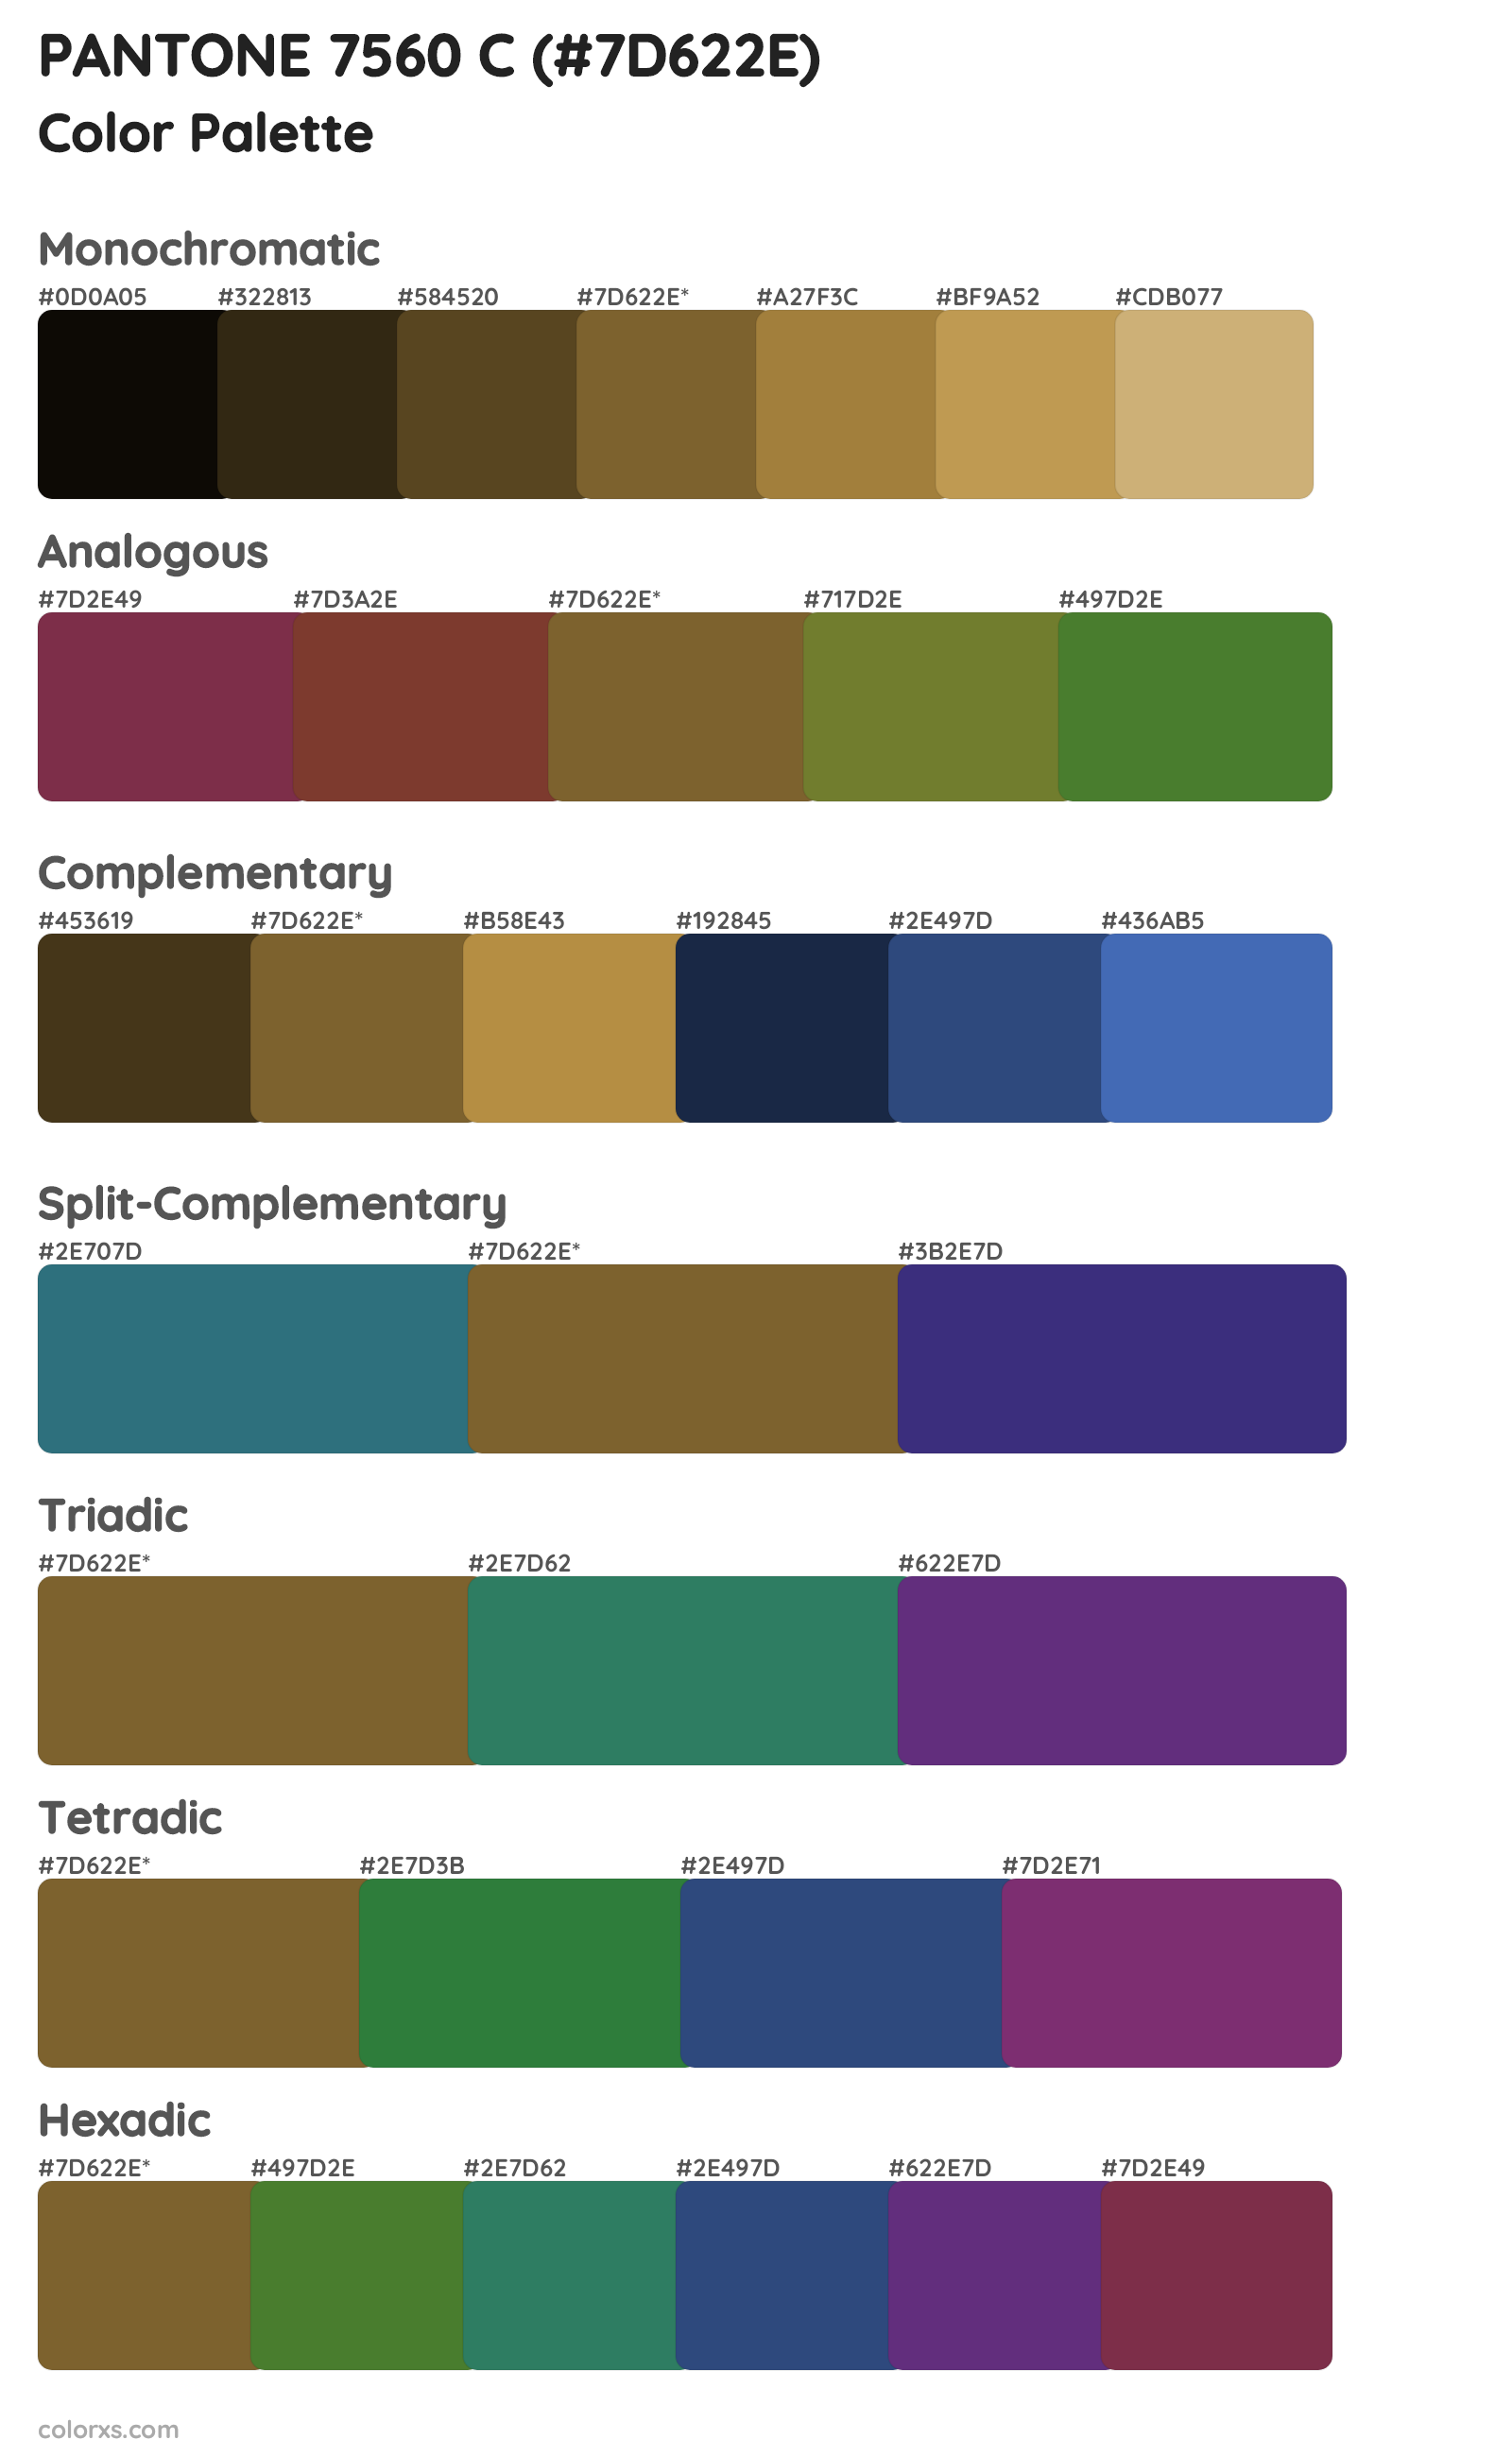 PANTONE 7560 C Color Scheme Palettes